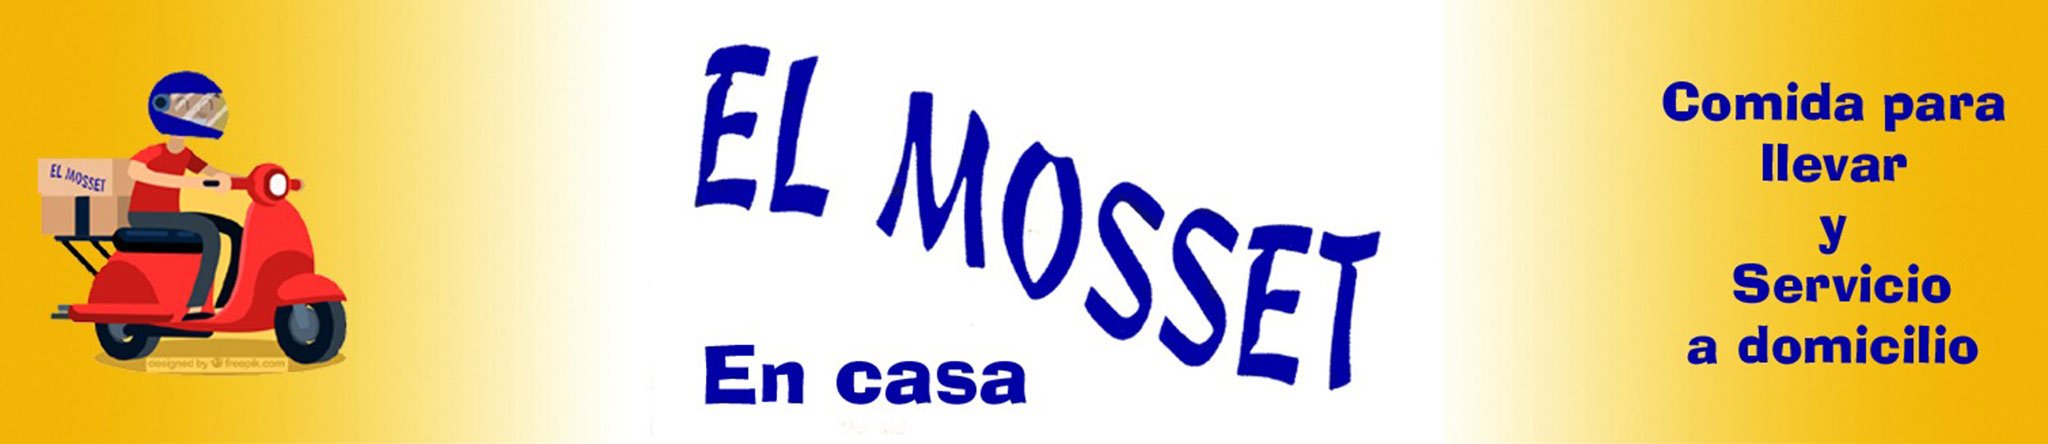 Logotipo de El Mosset